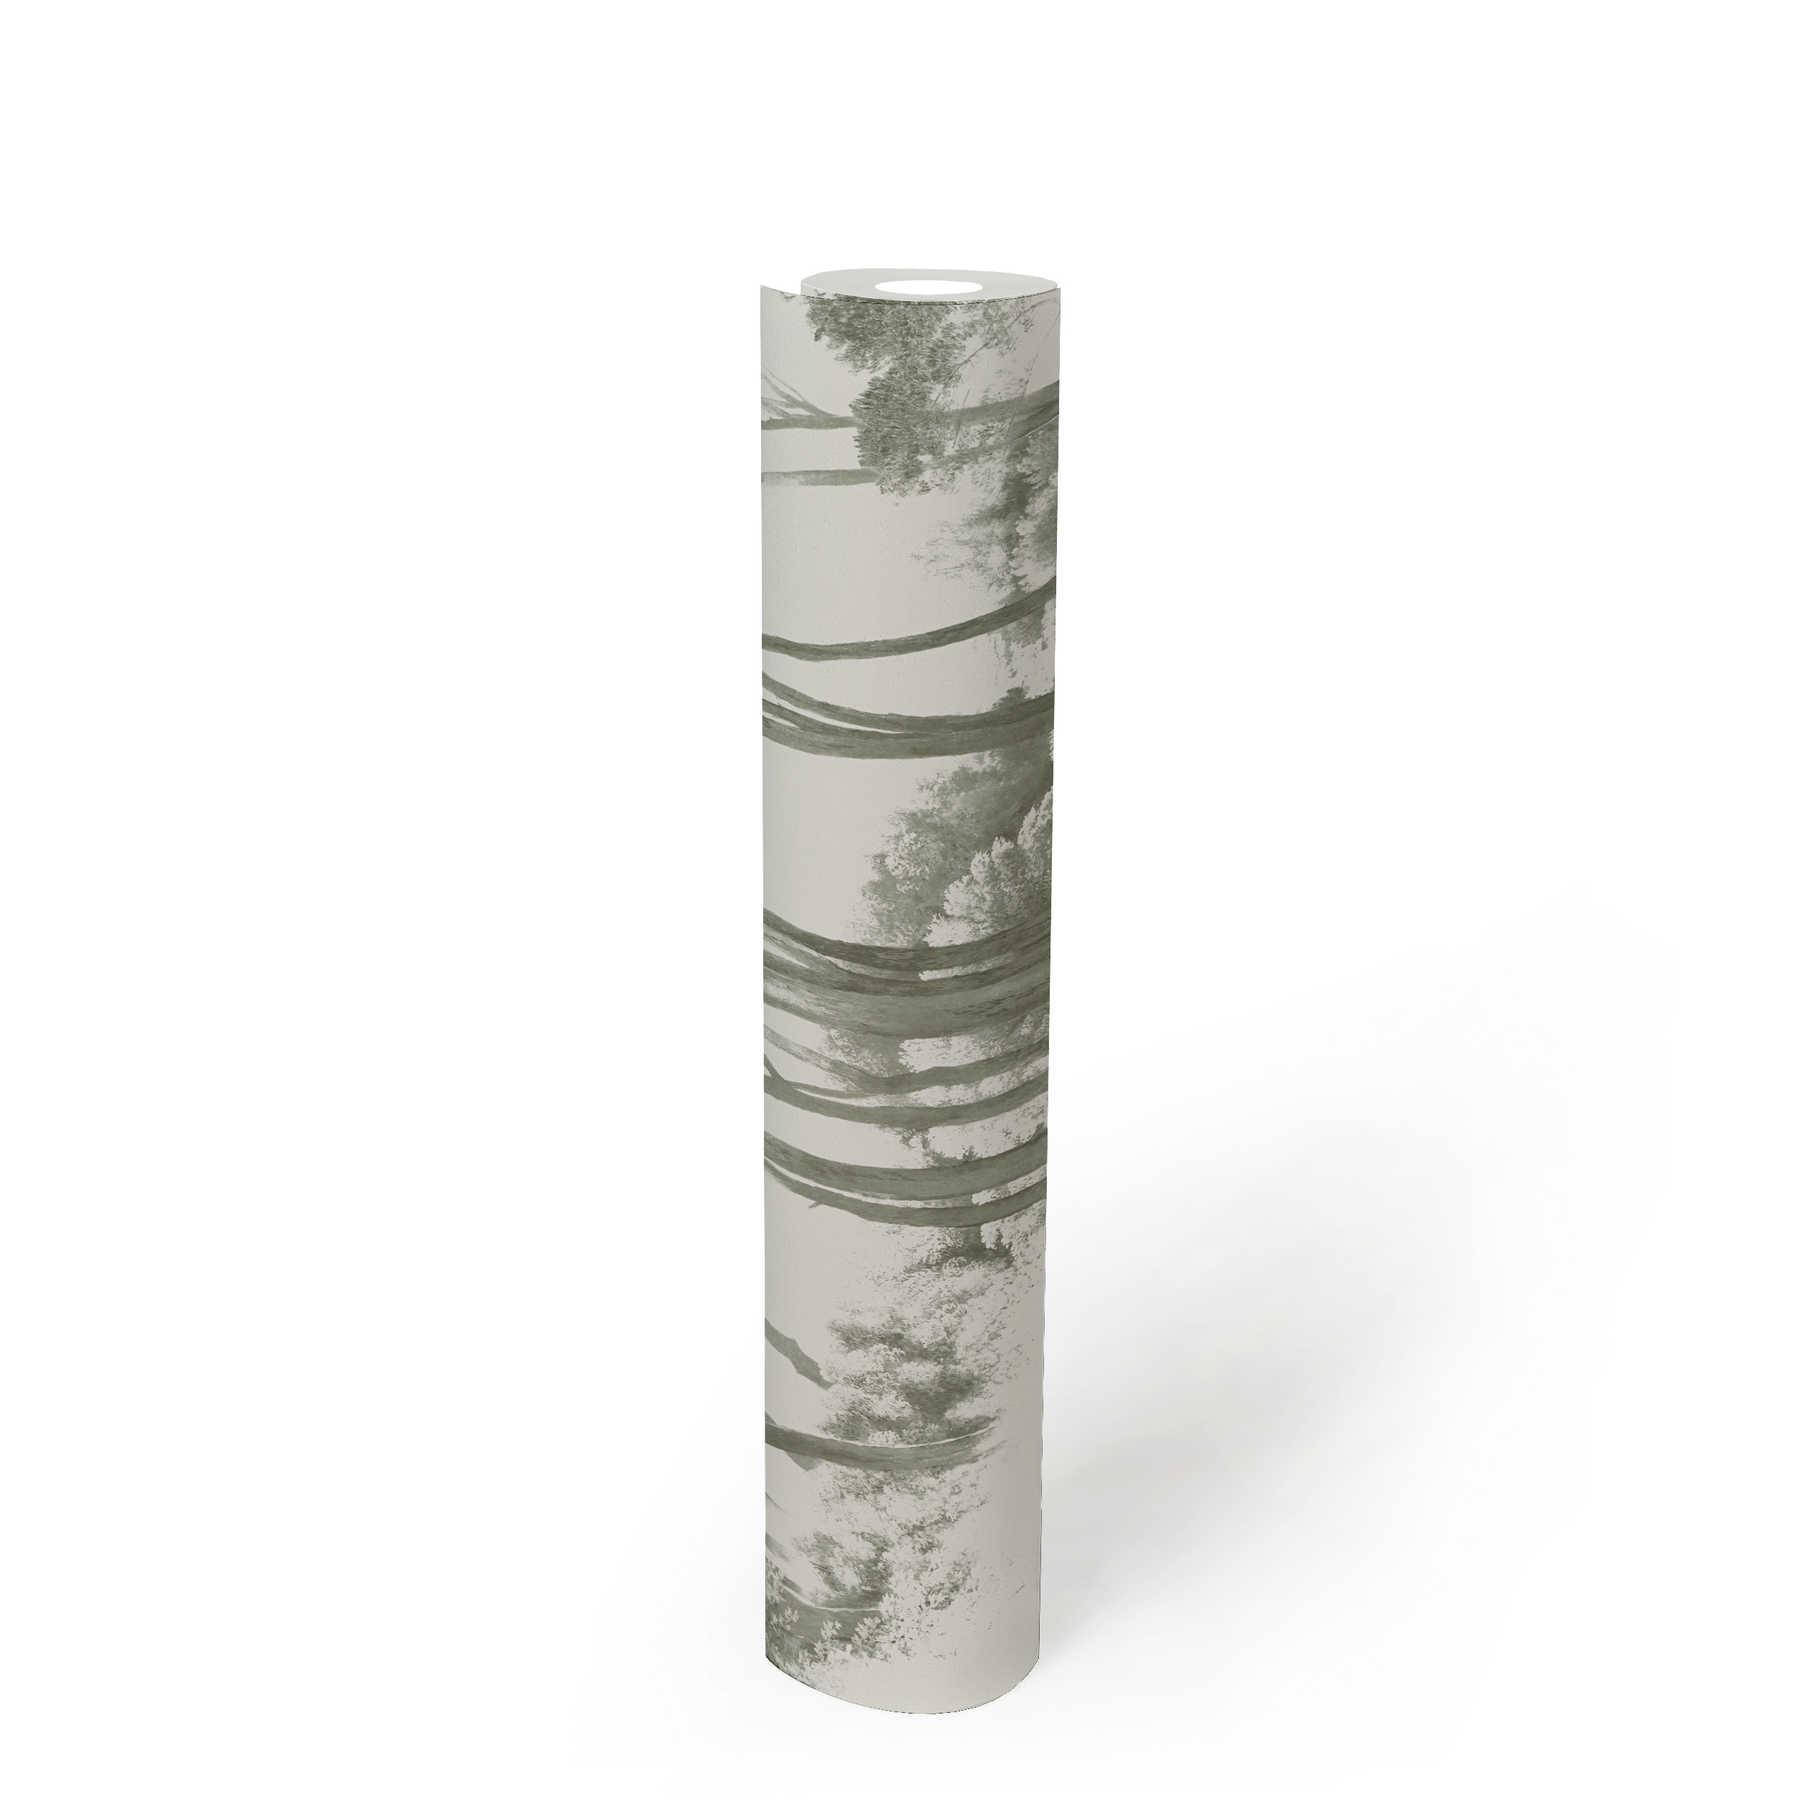             Papier peint paysage de forêt stylisé - vert, blanc
        